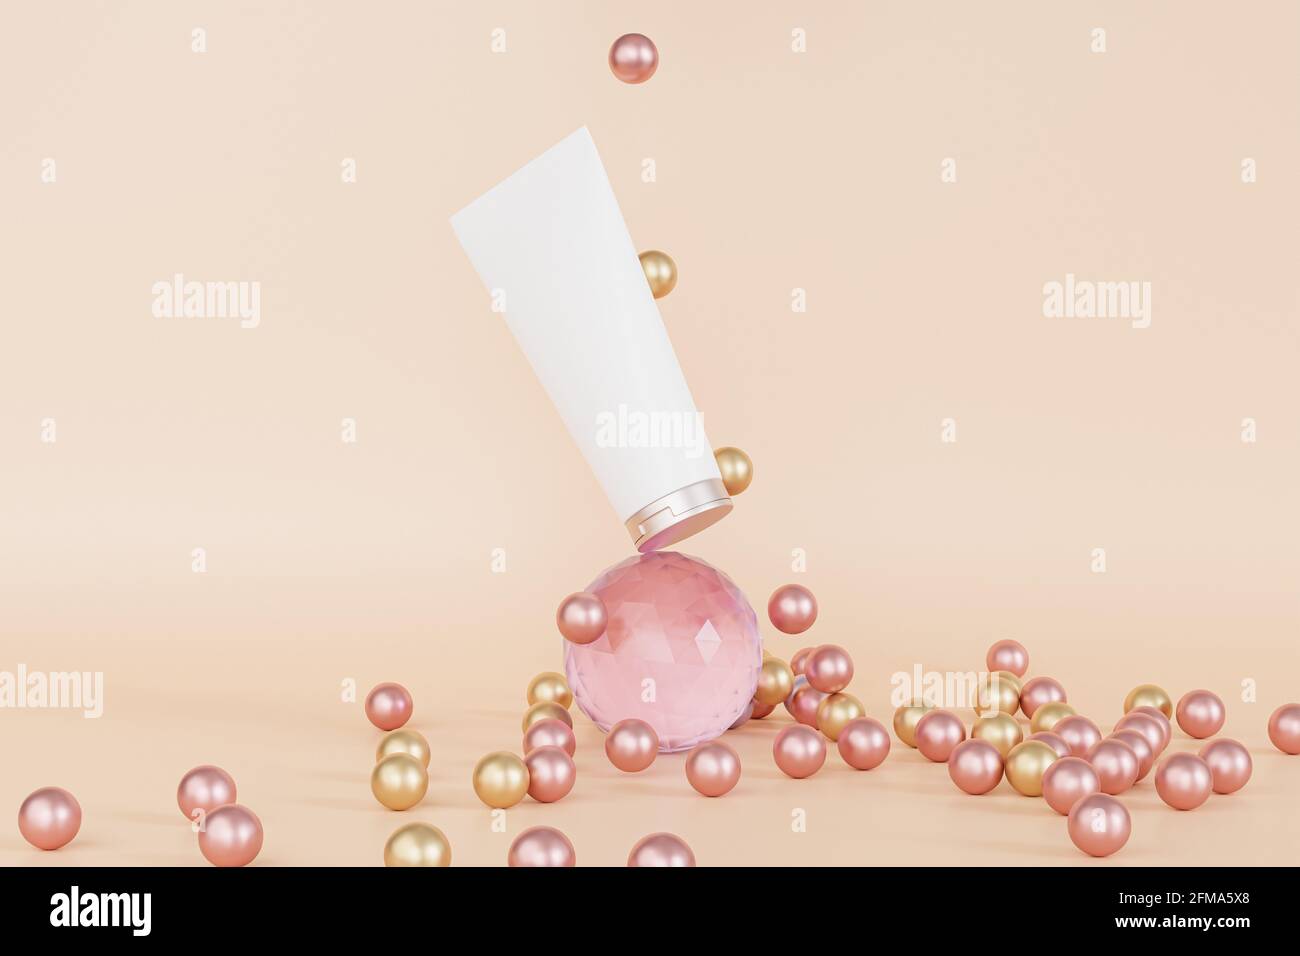 Tube de lotion Mockup pour produits cosmétiques ou équilibre publicitaire sur sphère de verre, rendu d'illustration 3d Banque D'Images